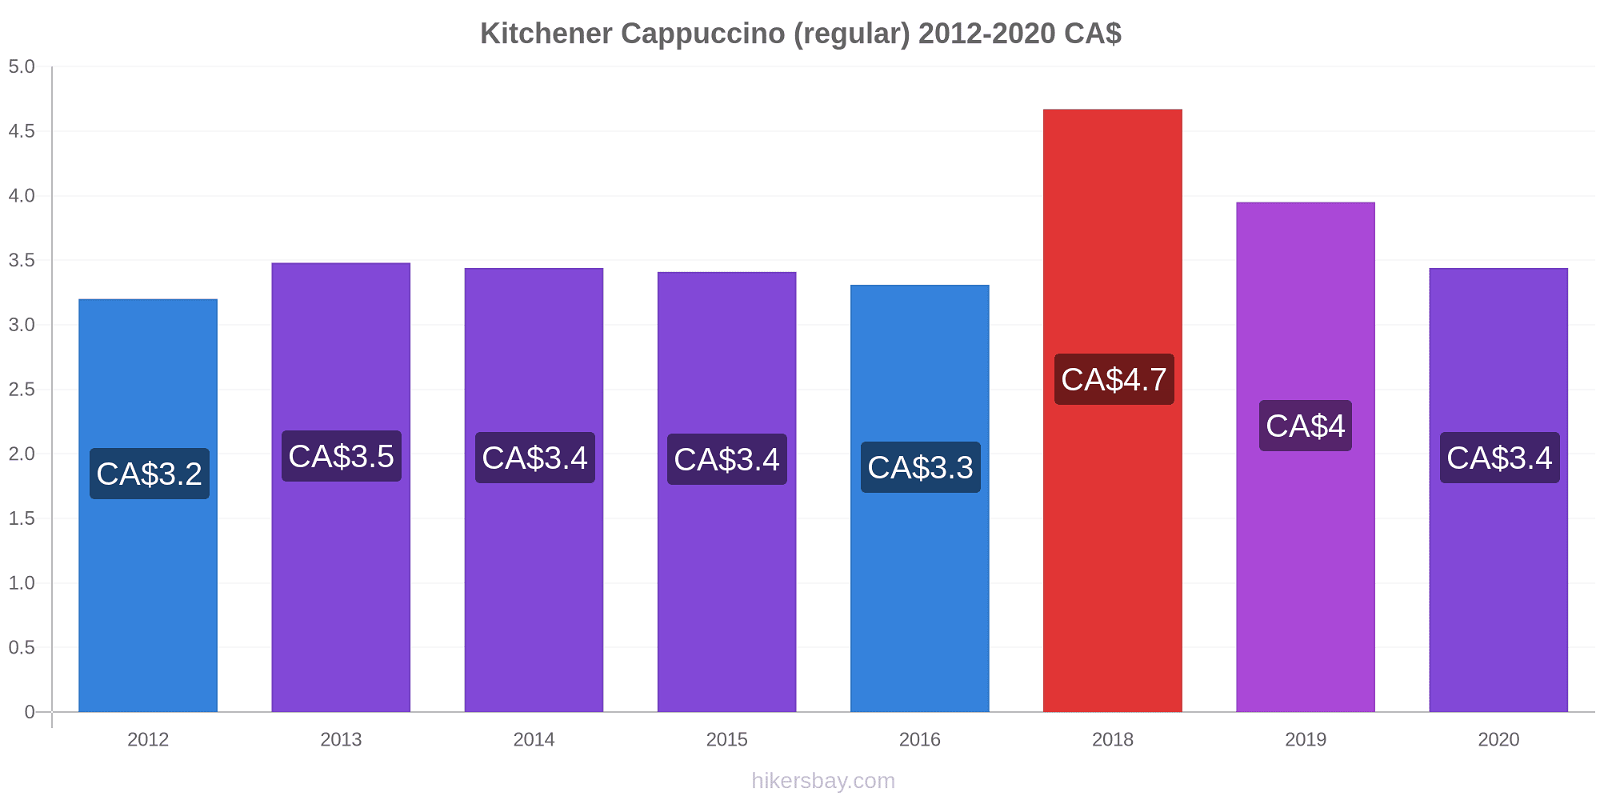 Kitchener variação de preço Capuccino (regular) hikersbay.com